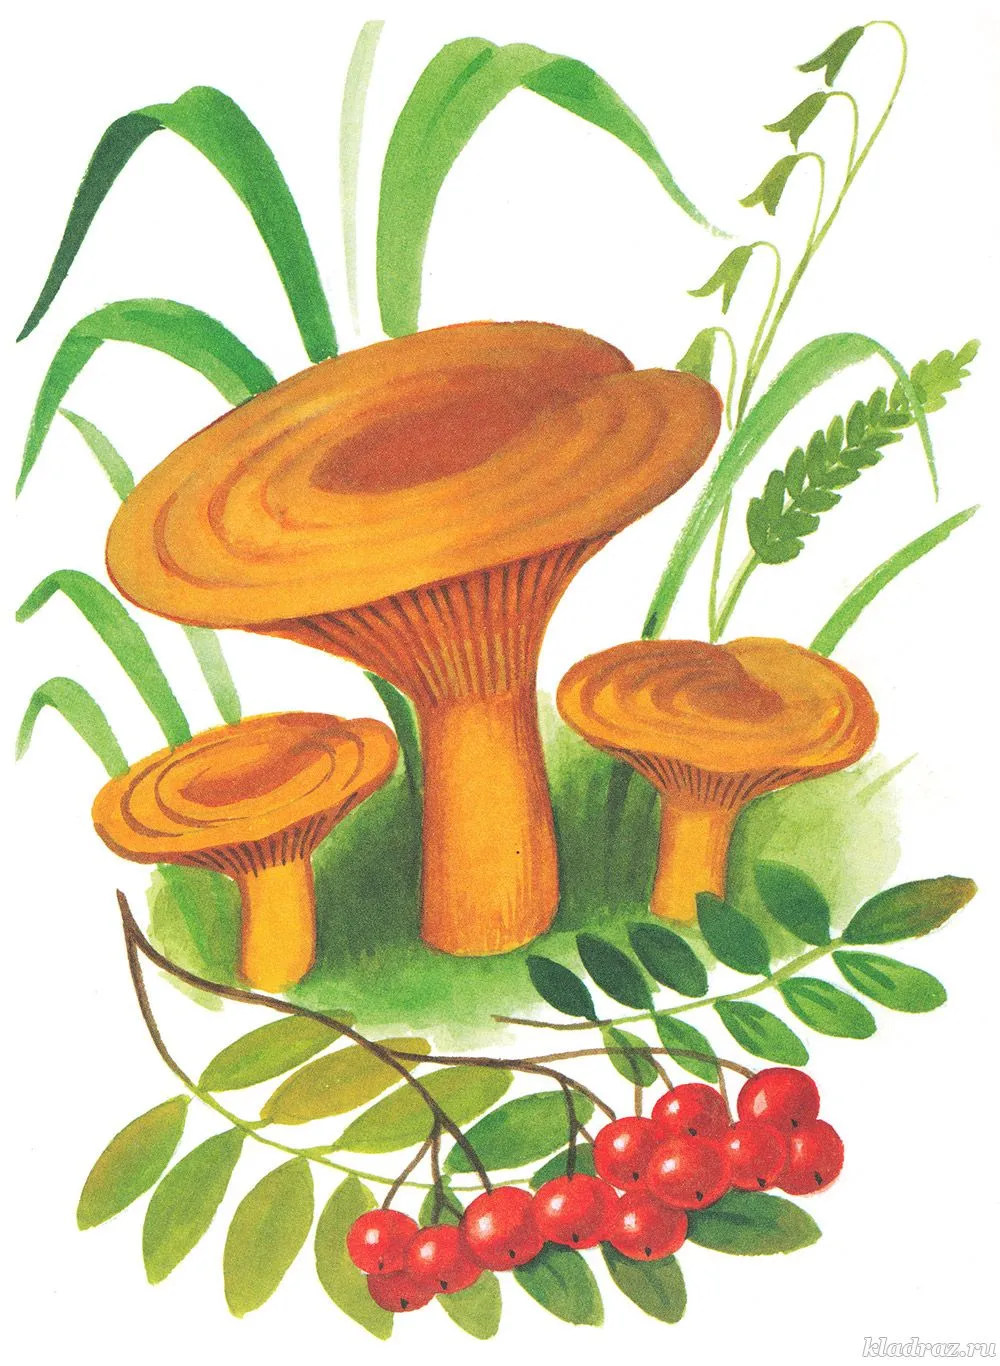 Спорообразование гриб Рыжик